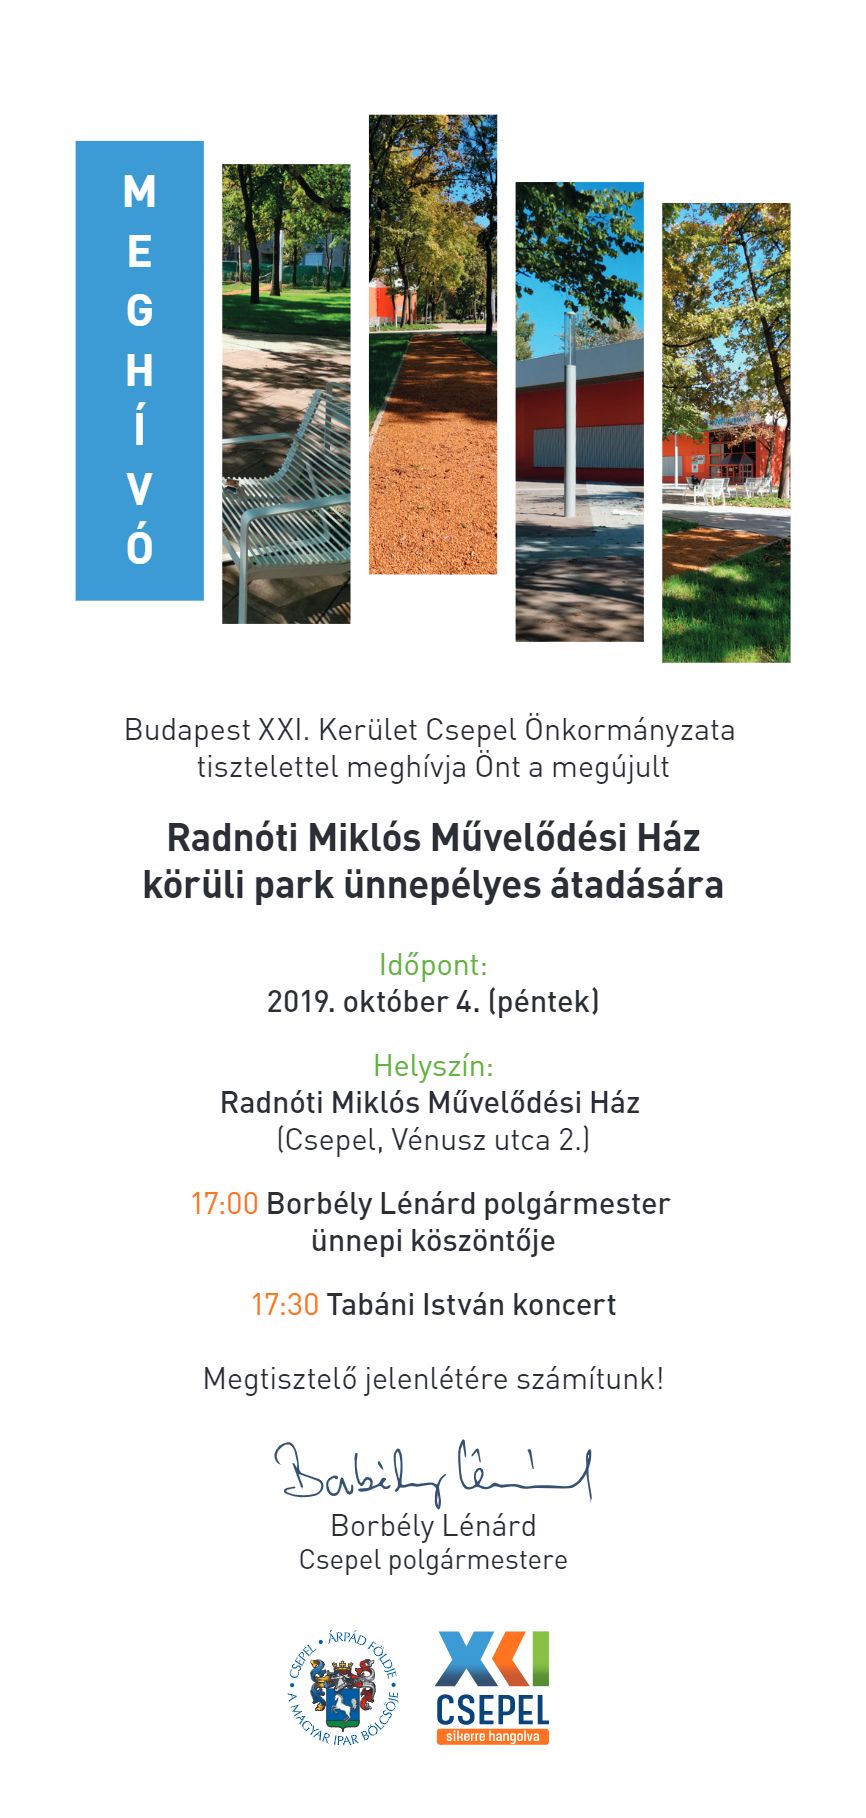 Meghivo Radnoti Miklos Muvelodesi Haz park atado 1 2